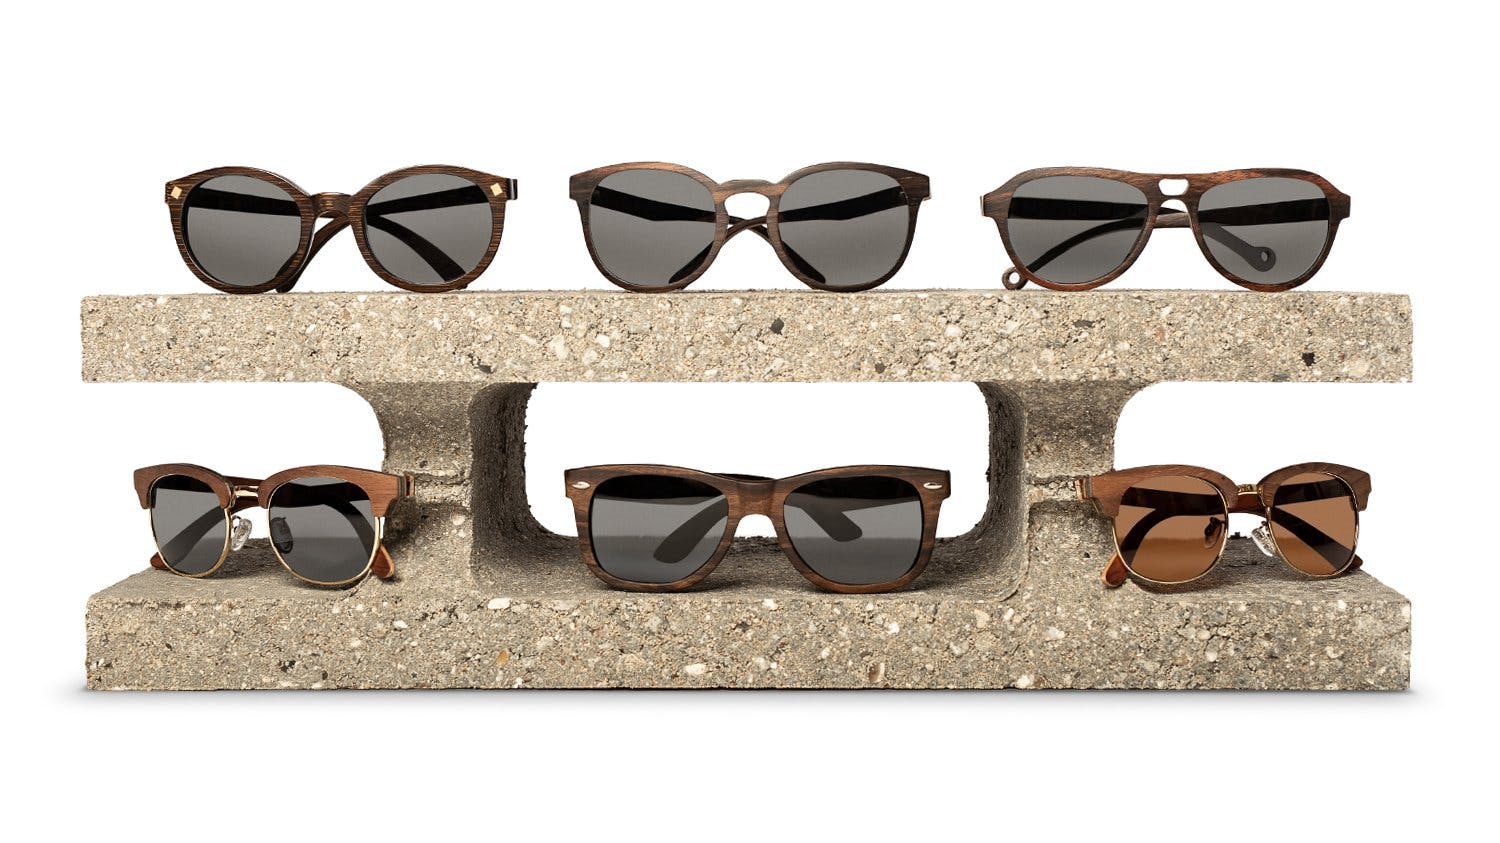 levering miste dig selv Bemærk Nystartet Webshop med design solbriller i træ